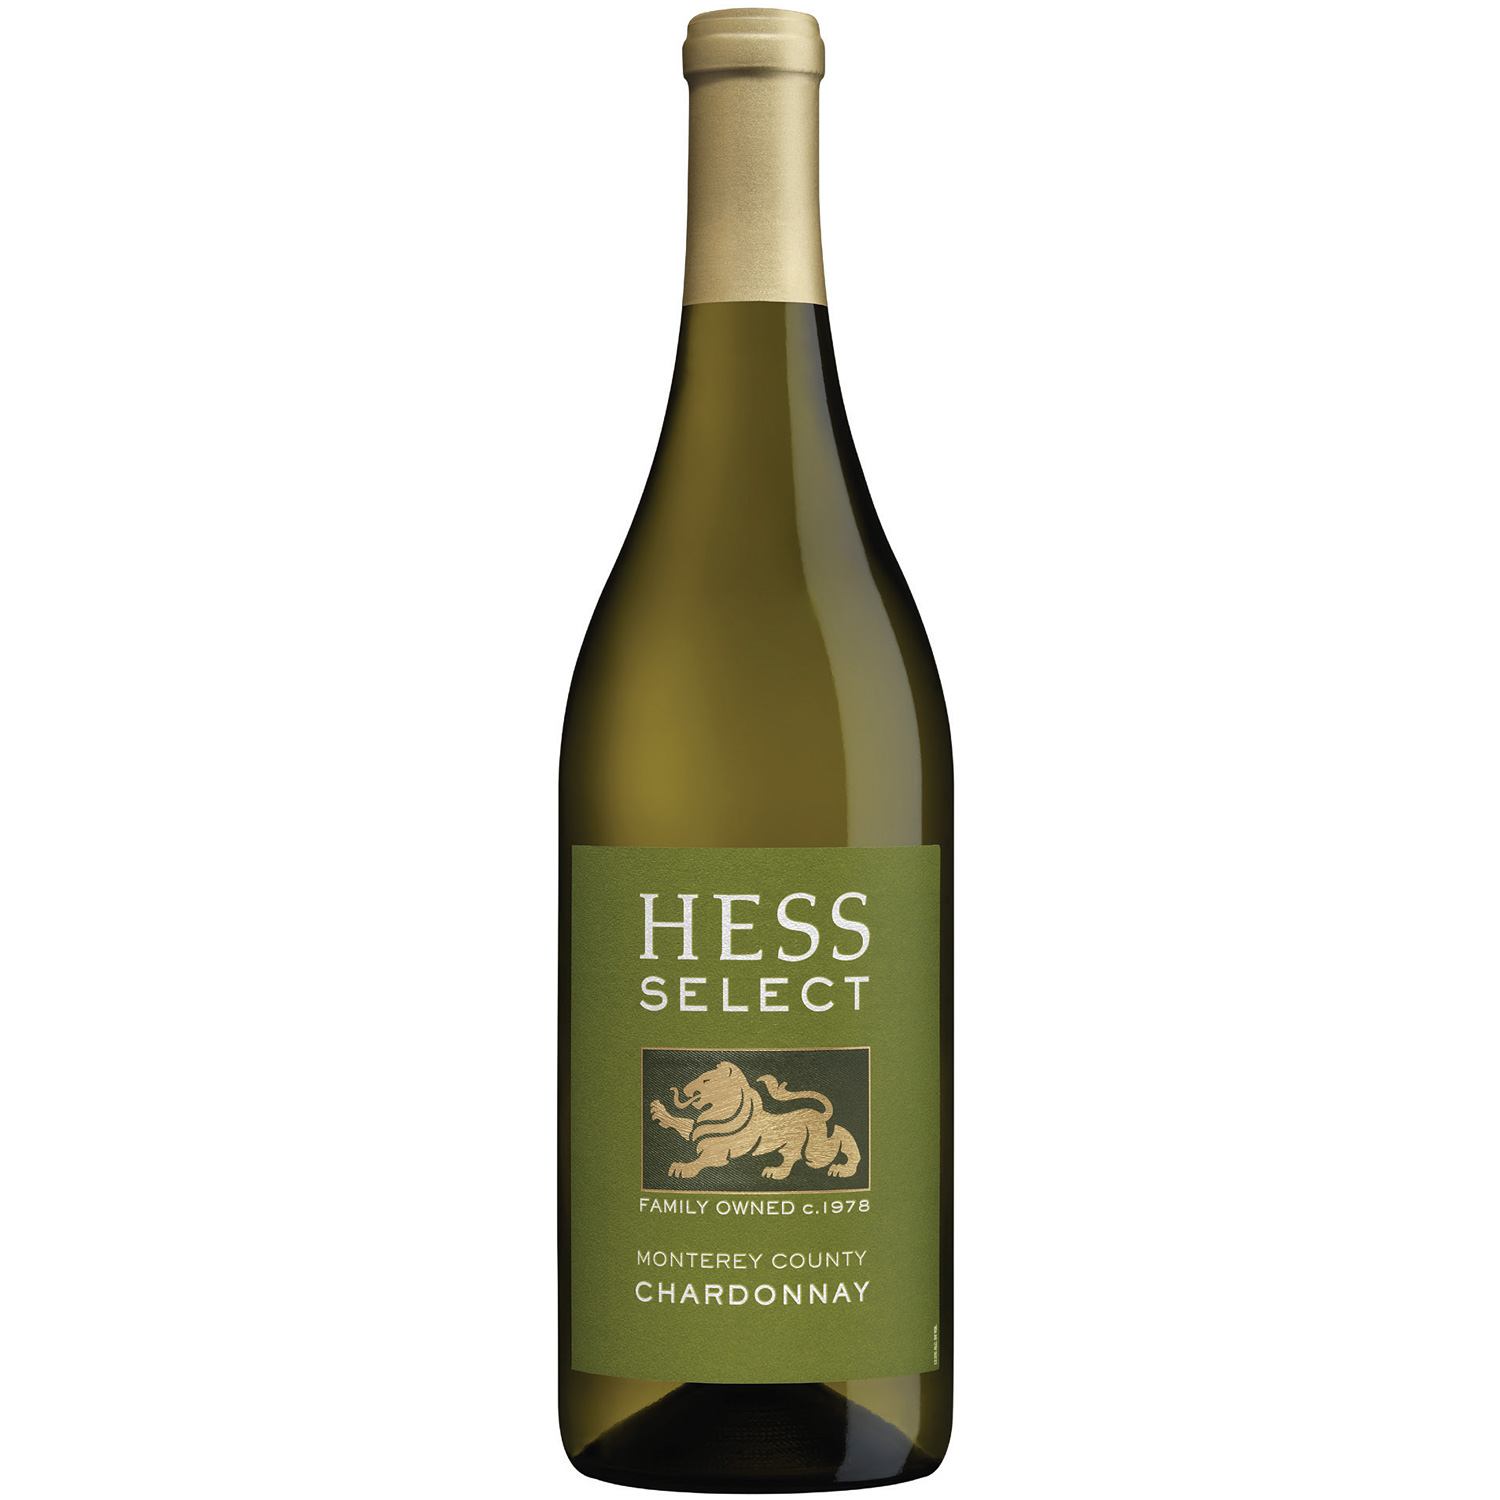 Hess Select Chardonnay 2017